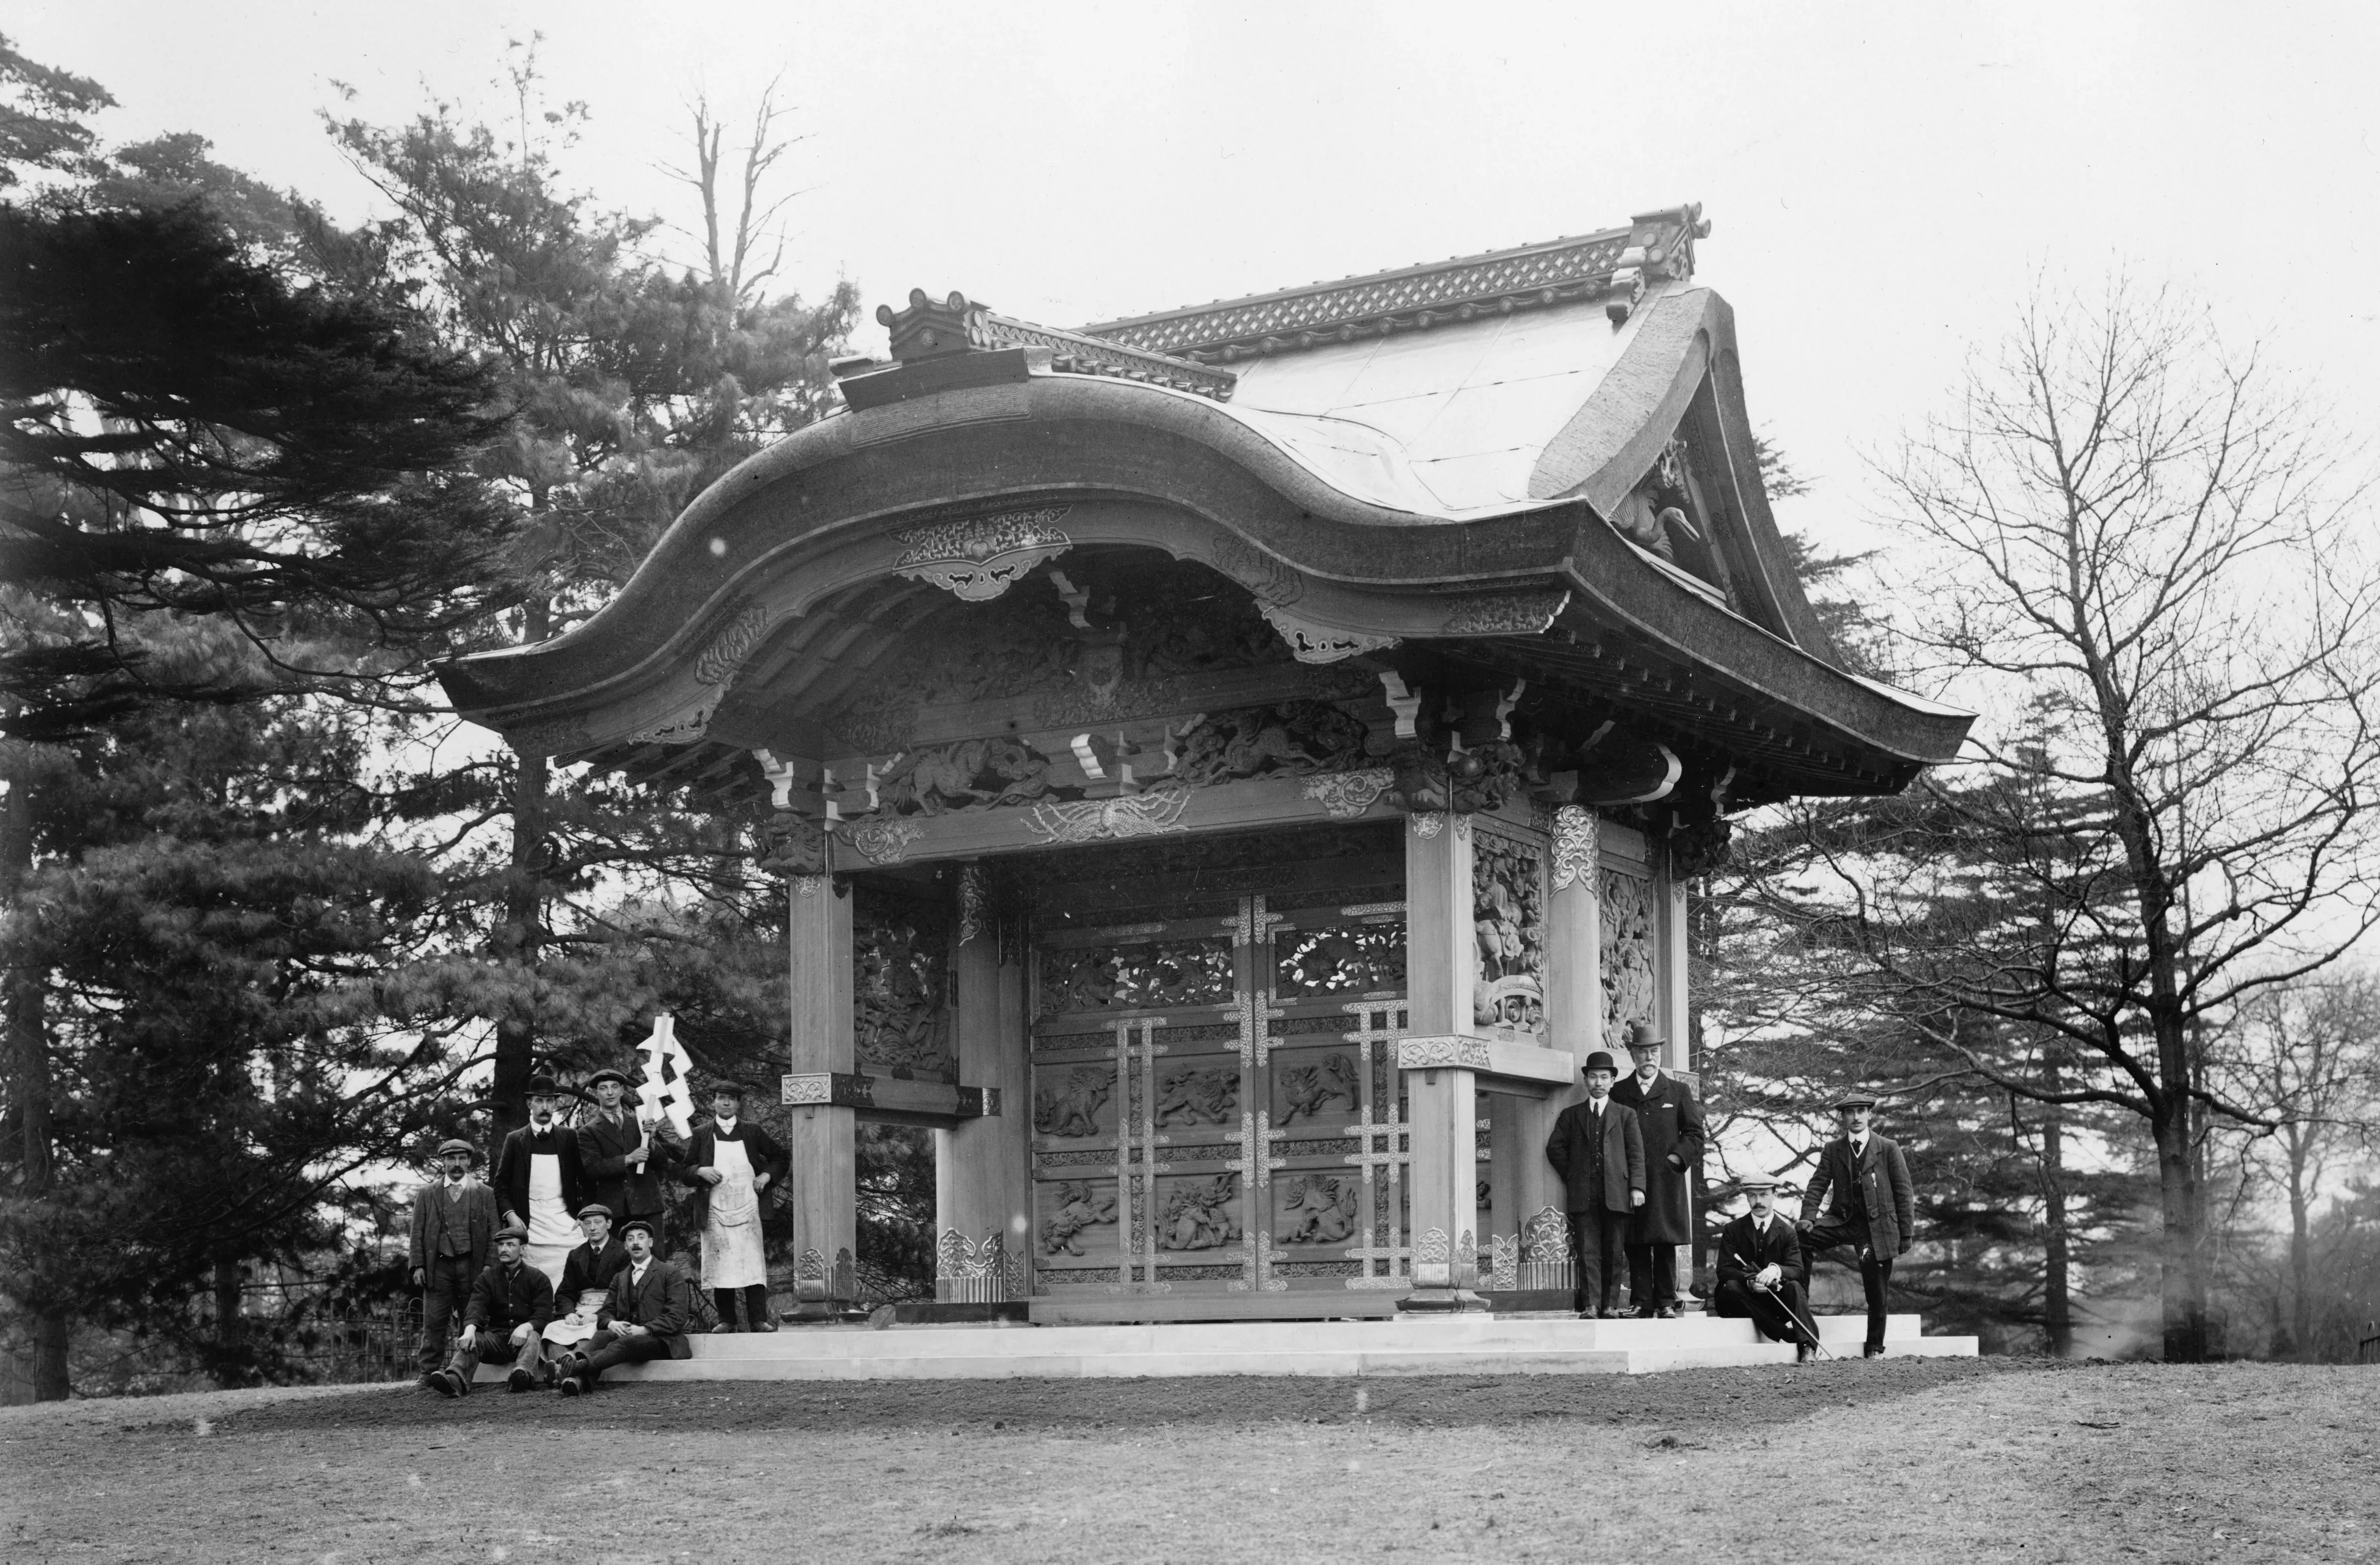 Original Japanese Gateway at Kew